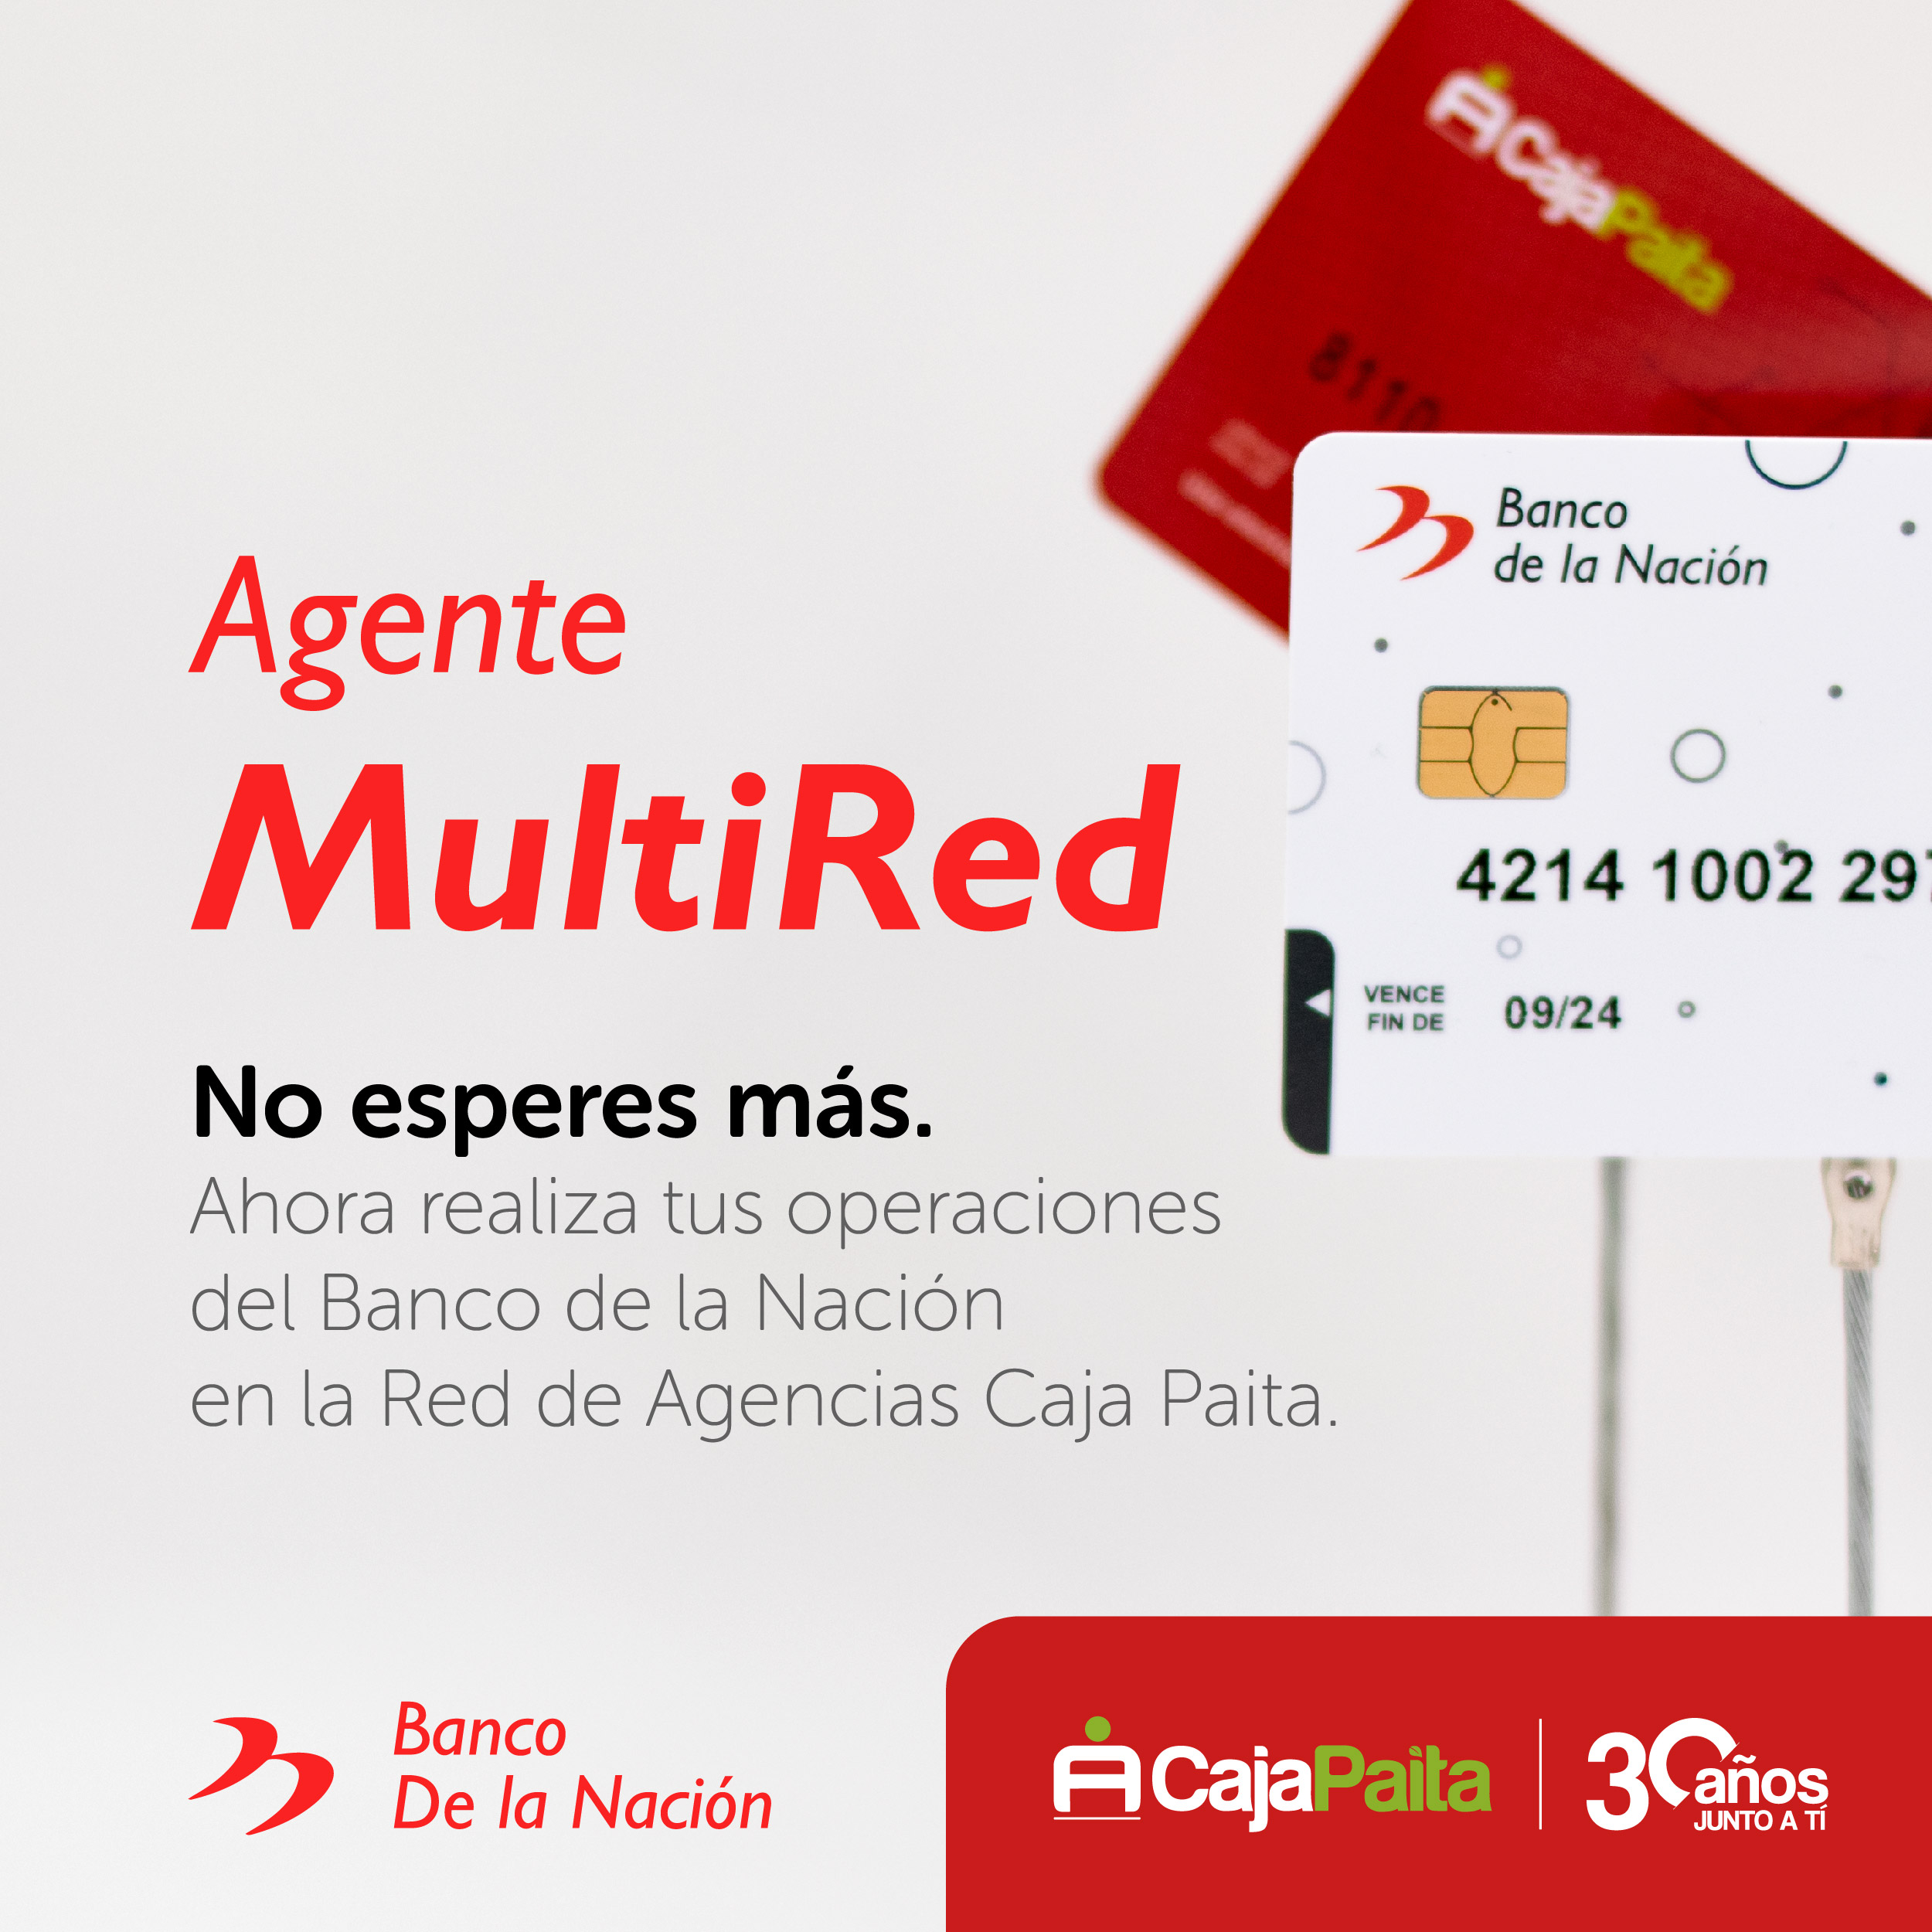 Caja Paita Se Suma A La Red De Agentes Multired Del Banco De La Nación Caja Paita